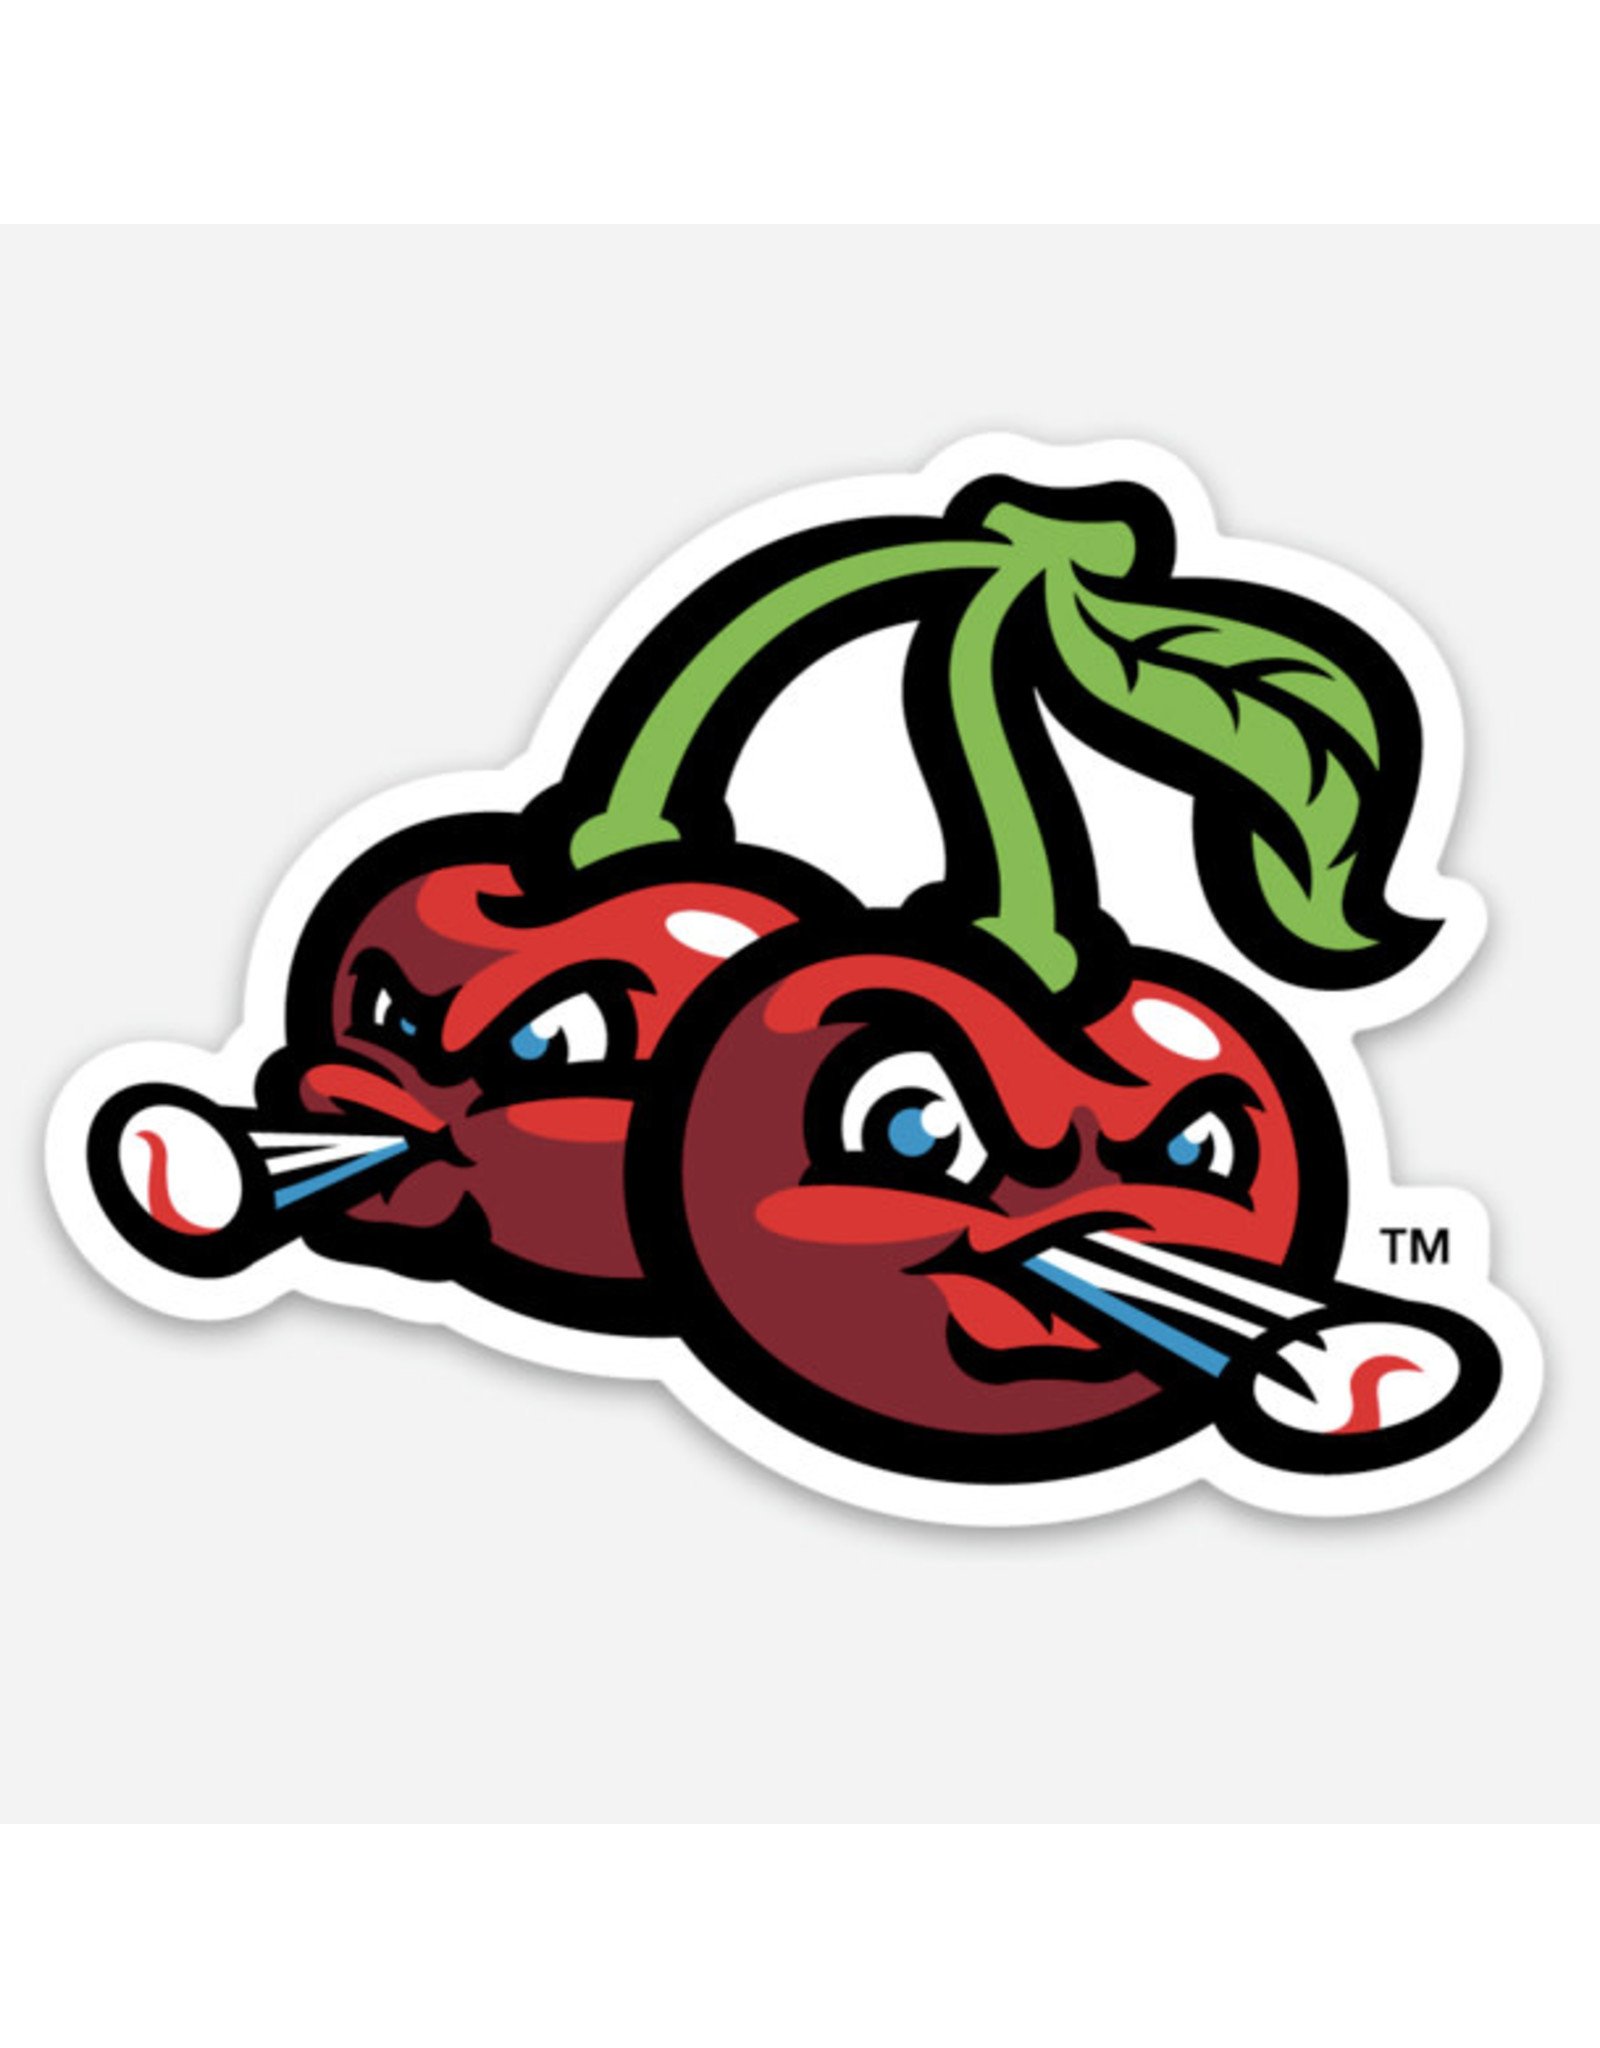 5006 Cherries Logo Sticker